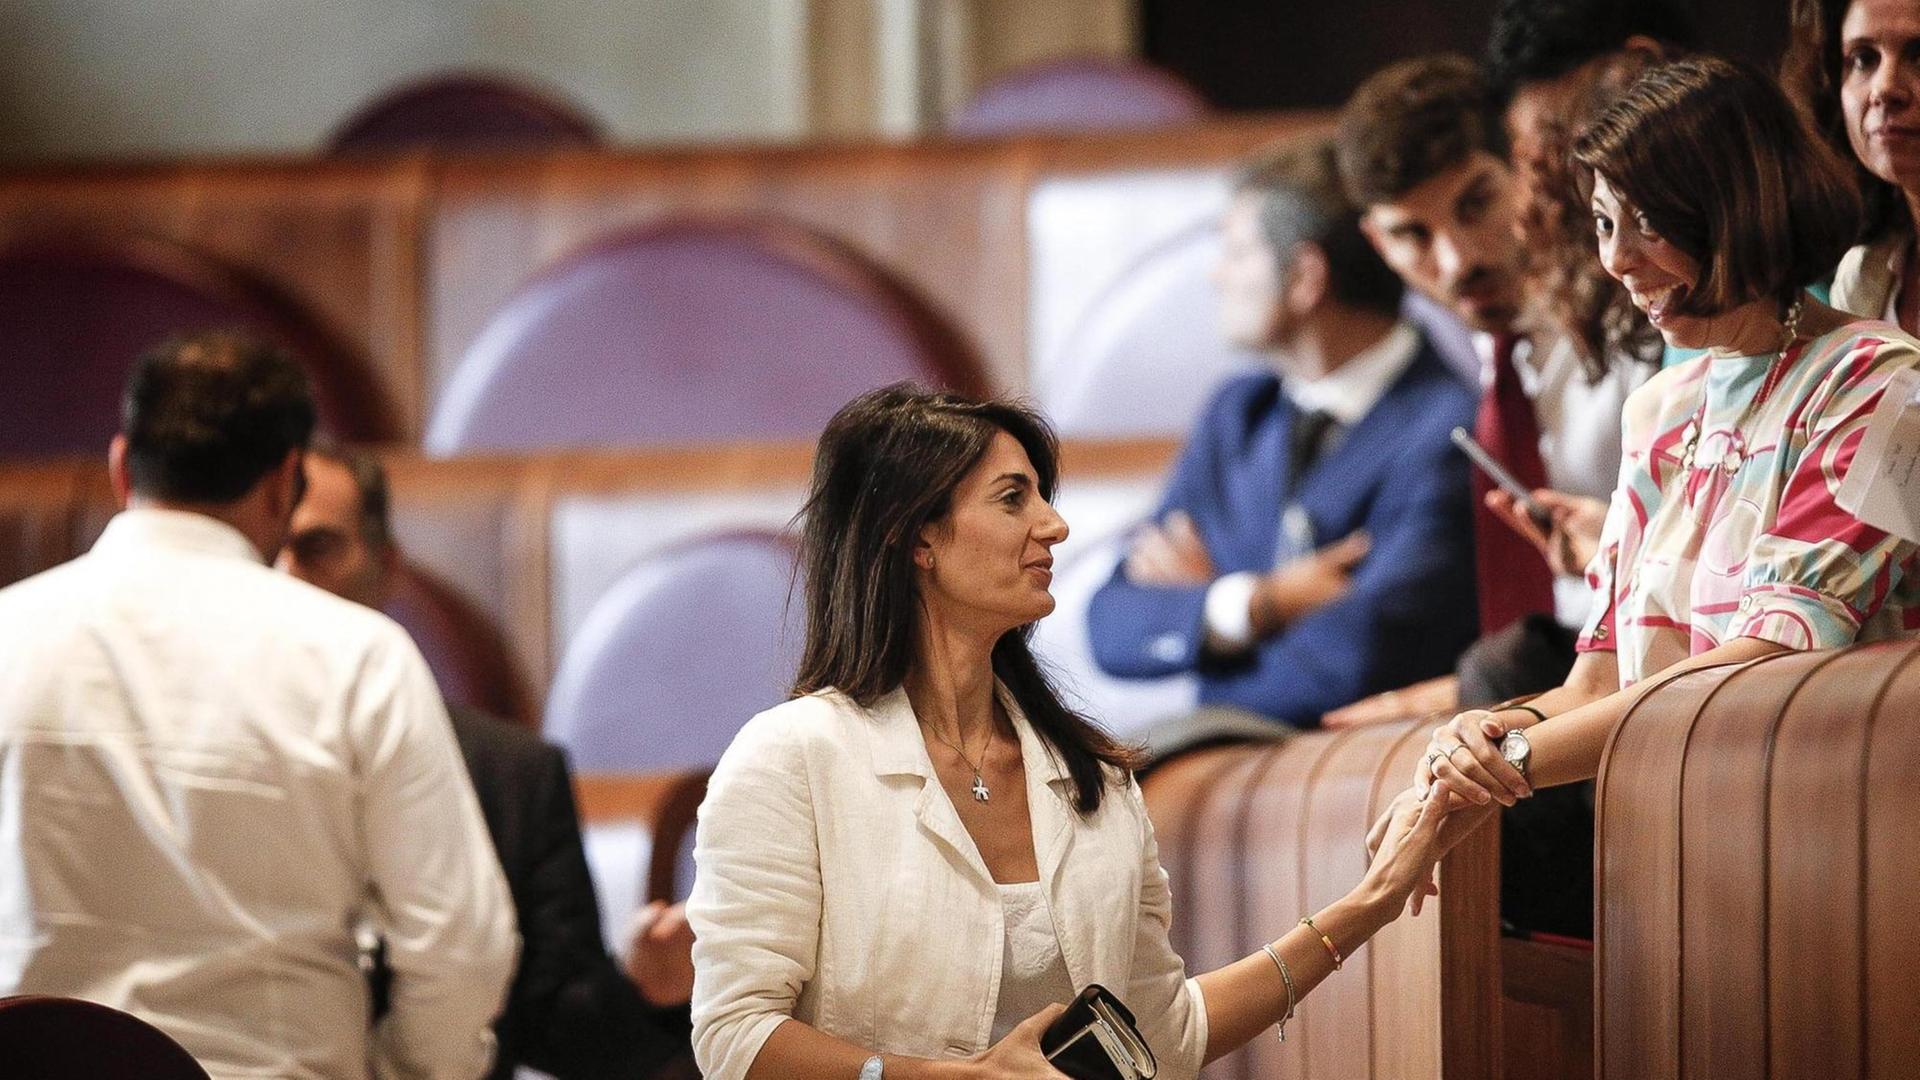 Die Bürgermeisterin von Rom, Virginia Raggi, bei einer außerordentlichen Sitzung des Stadtrats im Rathaus von Rom. Der römische Stadtrat hat die Entscheidung der Bürgermeisterin gestützt, die Bewerbung für die Olympischen Spiele 2024 nicht zu verfolgen.